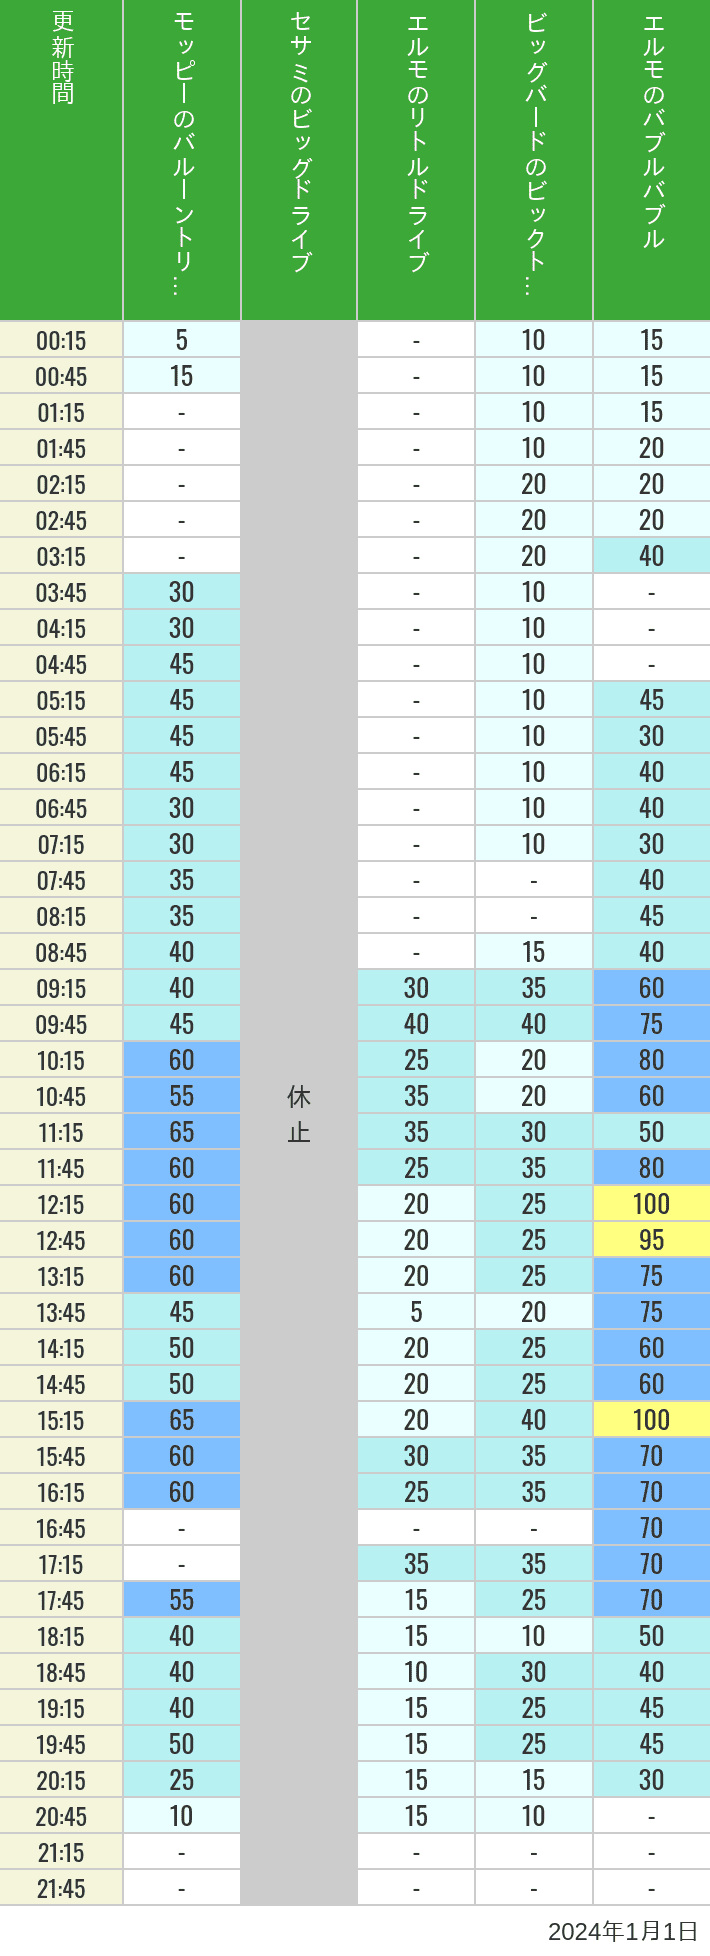 2024年1月1日（月）のバルーントリップ ビッグドライブ リトルドライブ ビックトップサーカス バブルバブルの待ち時間を7時から21時まで時間別に記録した表